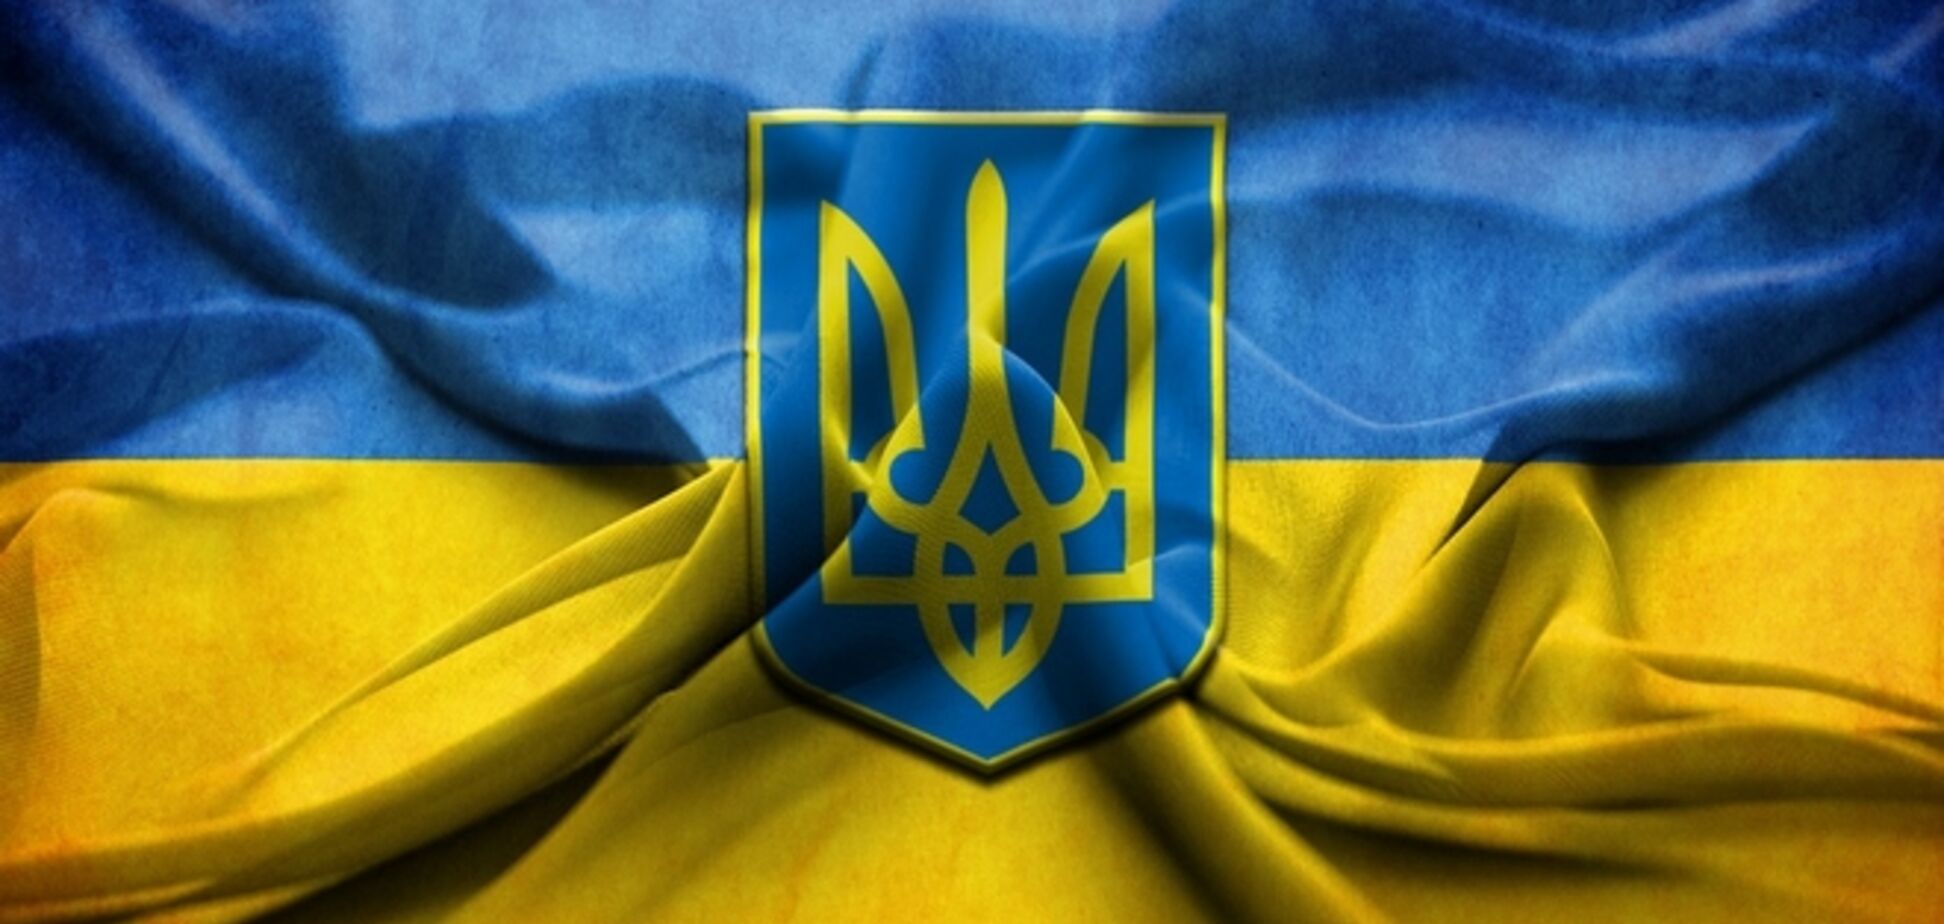 Армия Украины начала контролировать избирательные комиссии в Донбассе - ИС